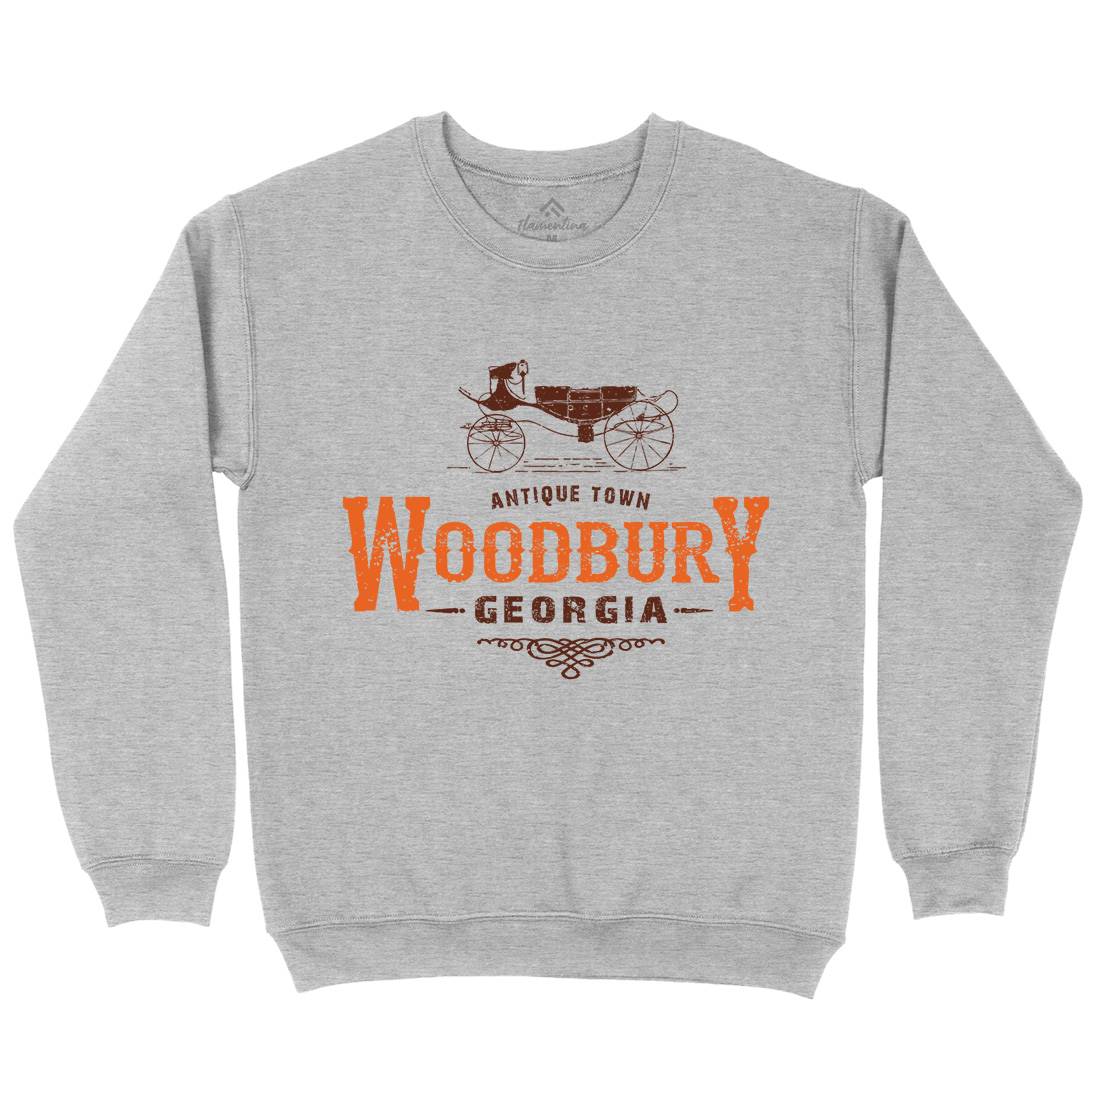 Woodbury Kids Crew Neck Sweatshirt Horror D347